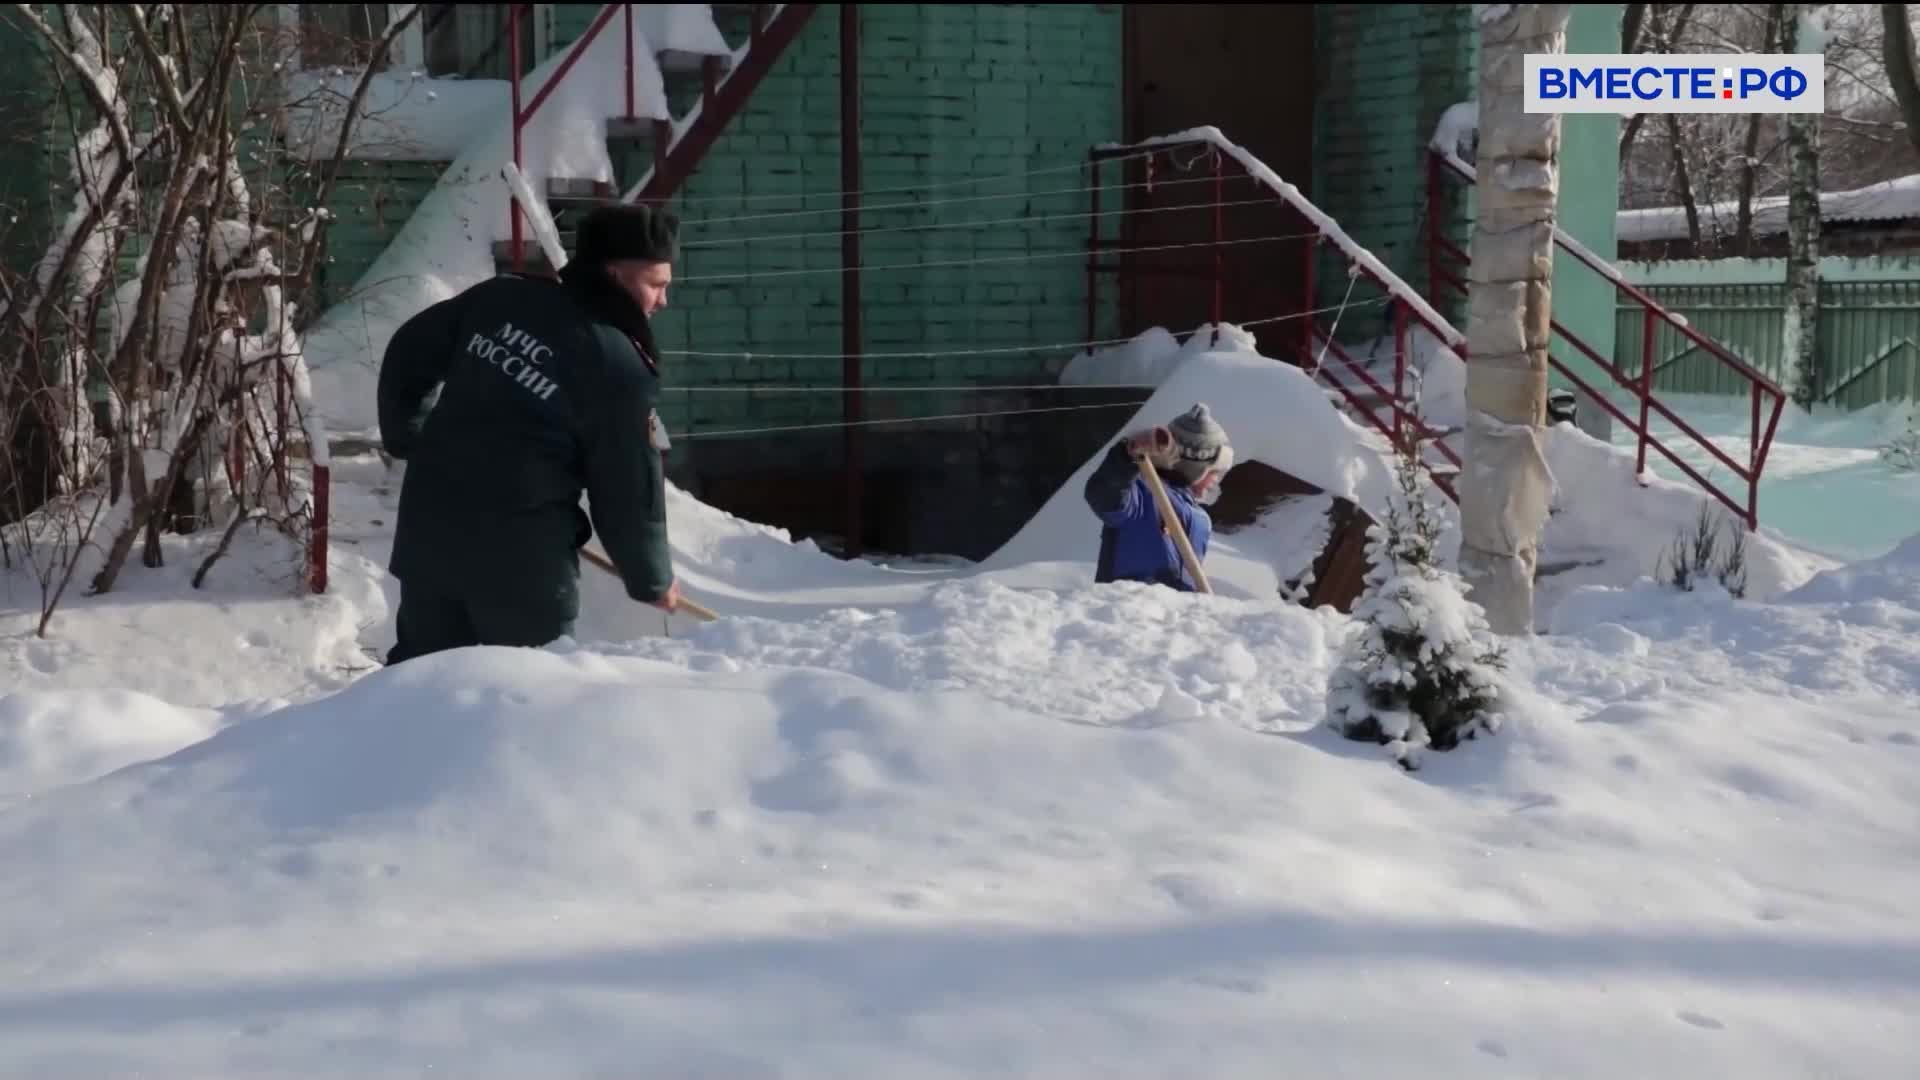 МЧС против снега: во Владимирской области спасатели очистили территории сотни детских учреждений